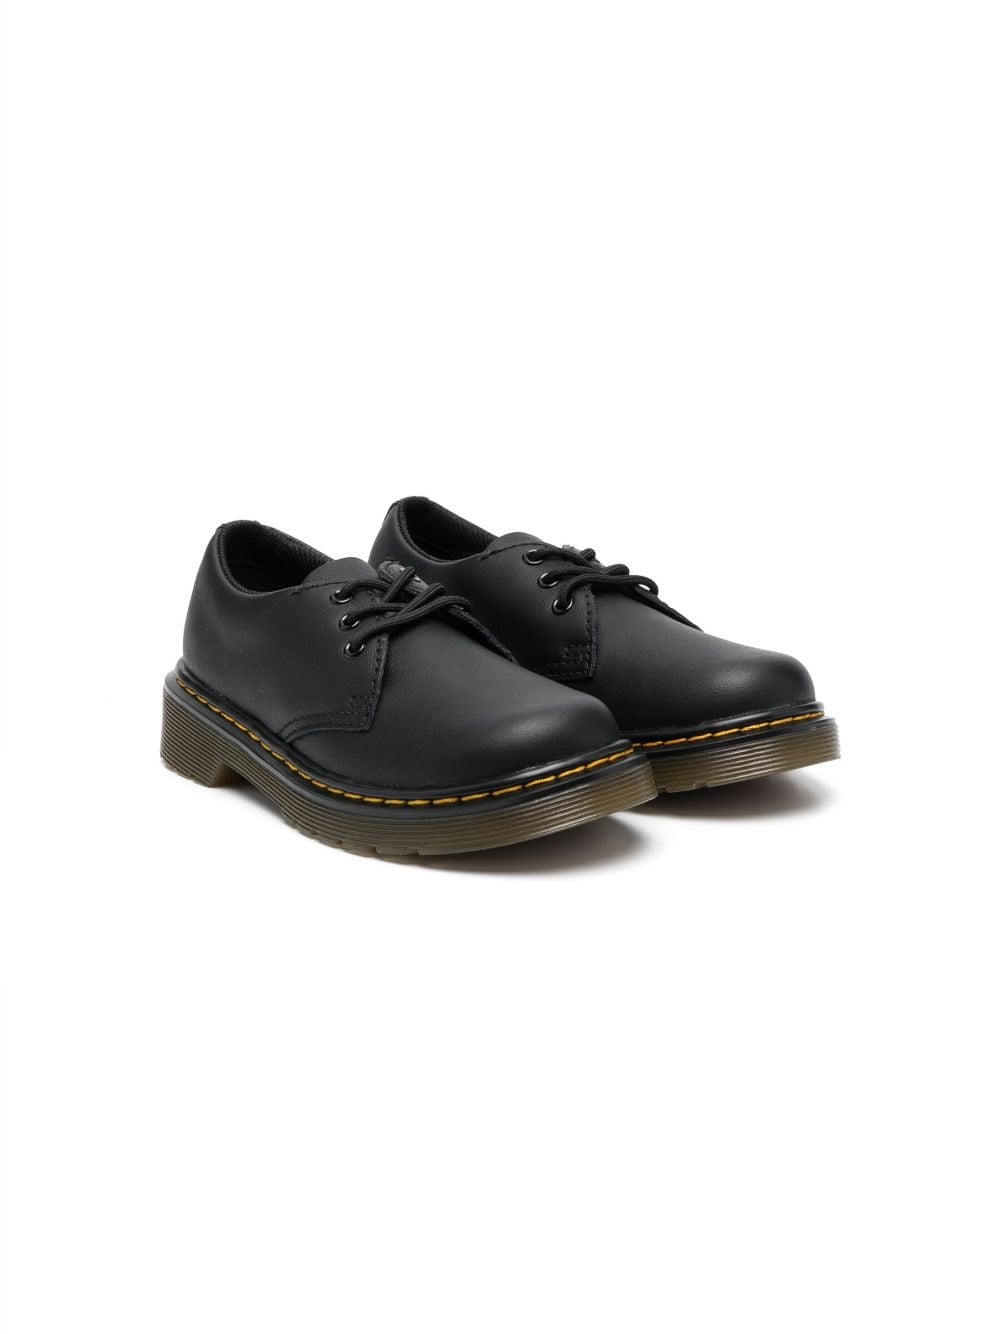 Dr. Martens Kids 1461 leather Derby shoes - Black von Dr. Martens Kids